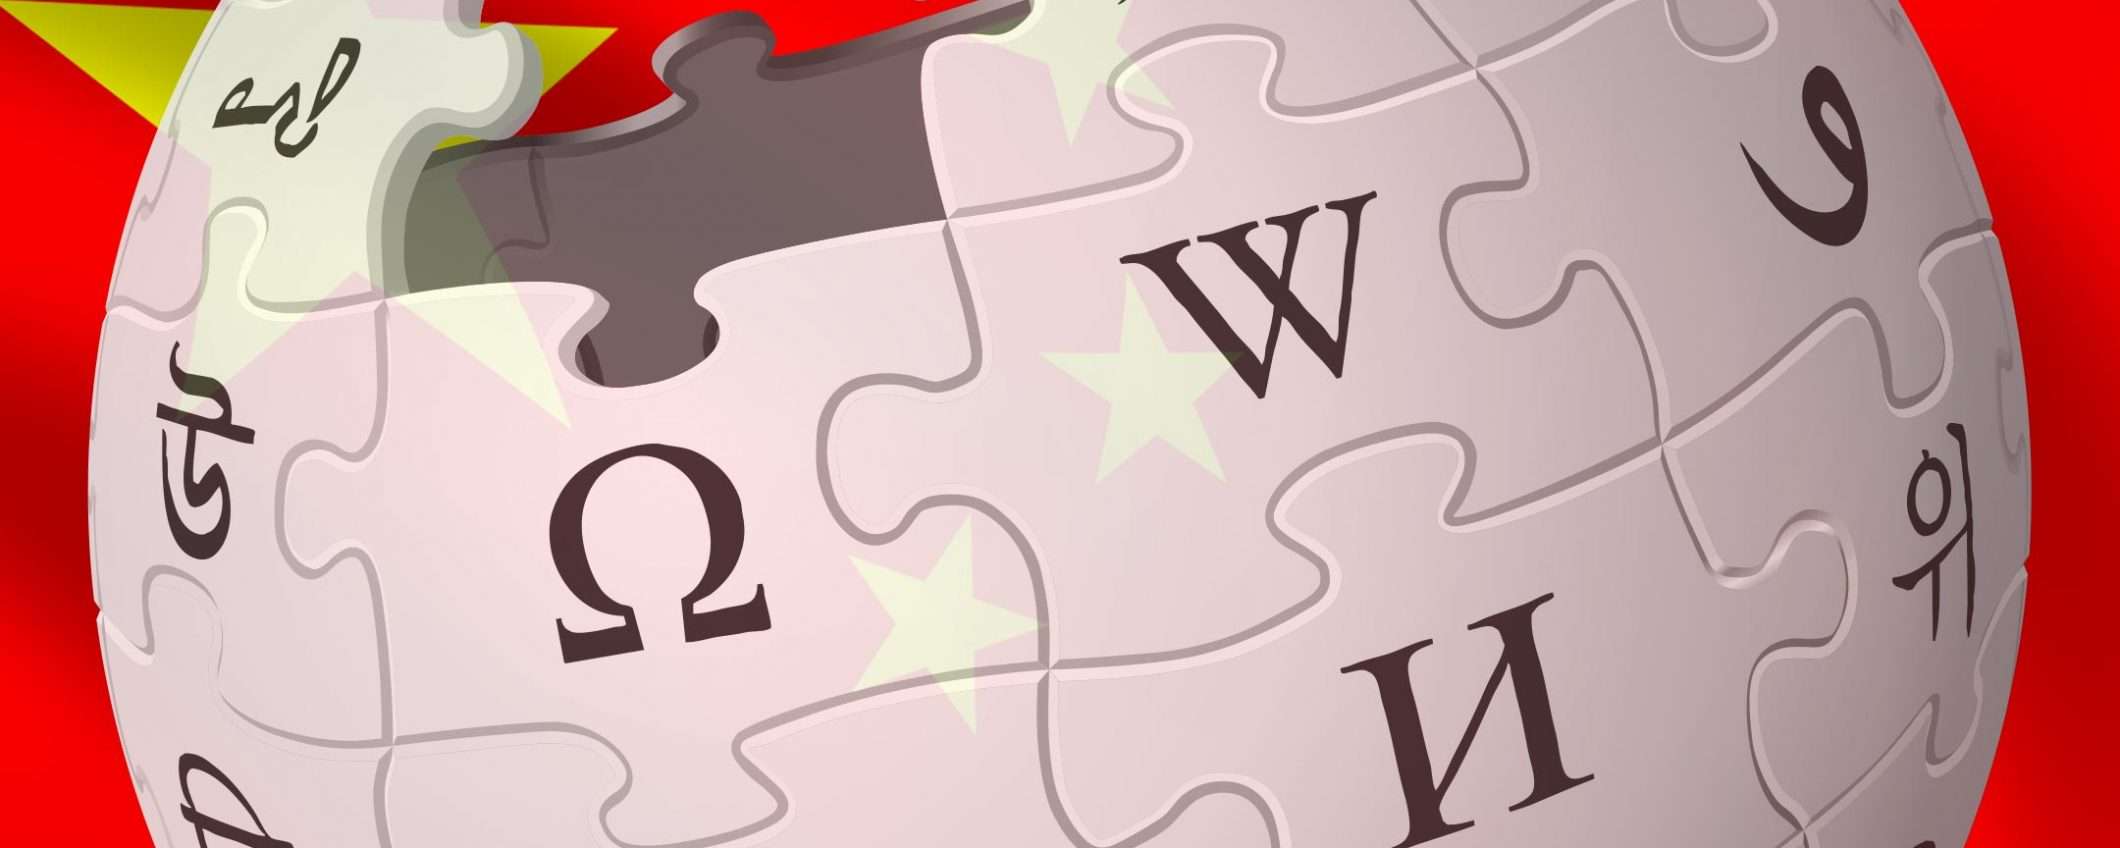 Wikipedia: 'attacco alle fondamenta' dalla Cina